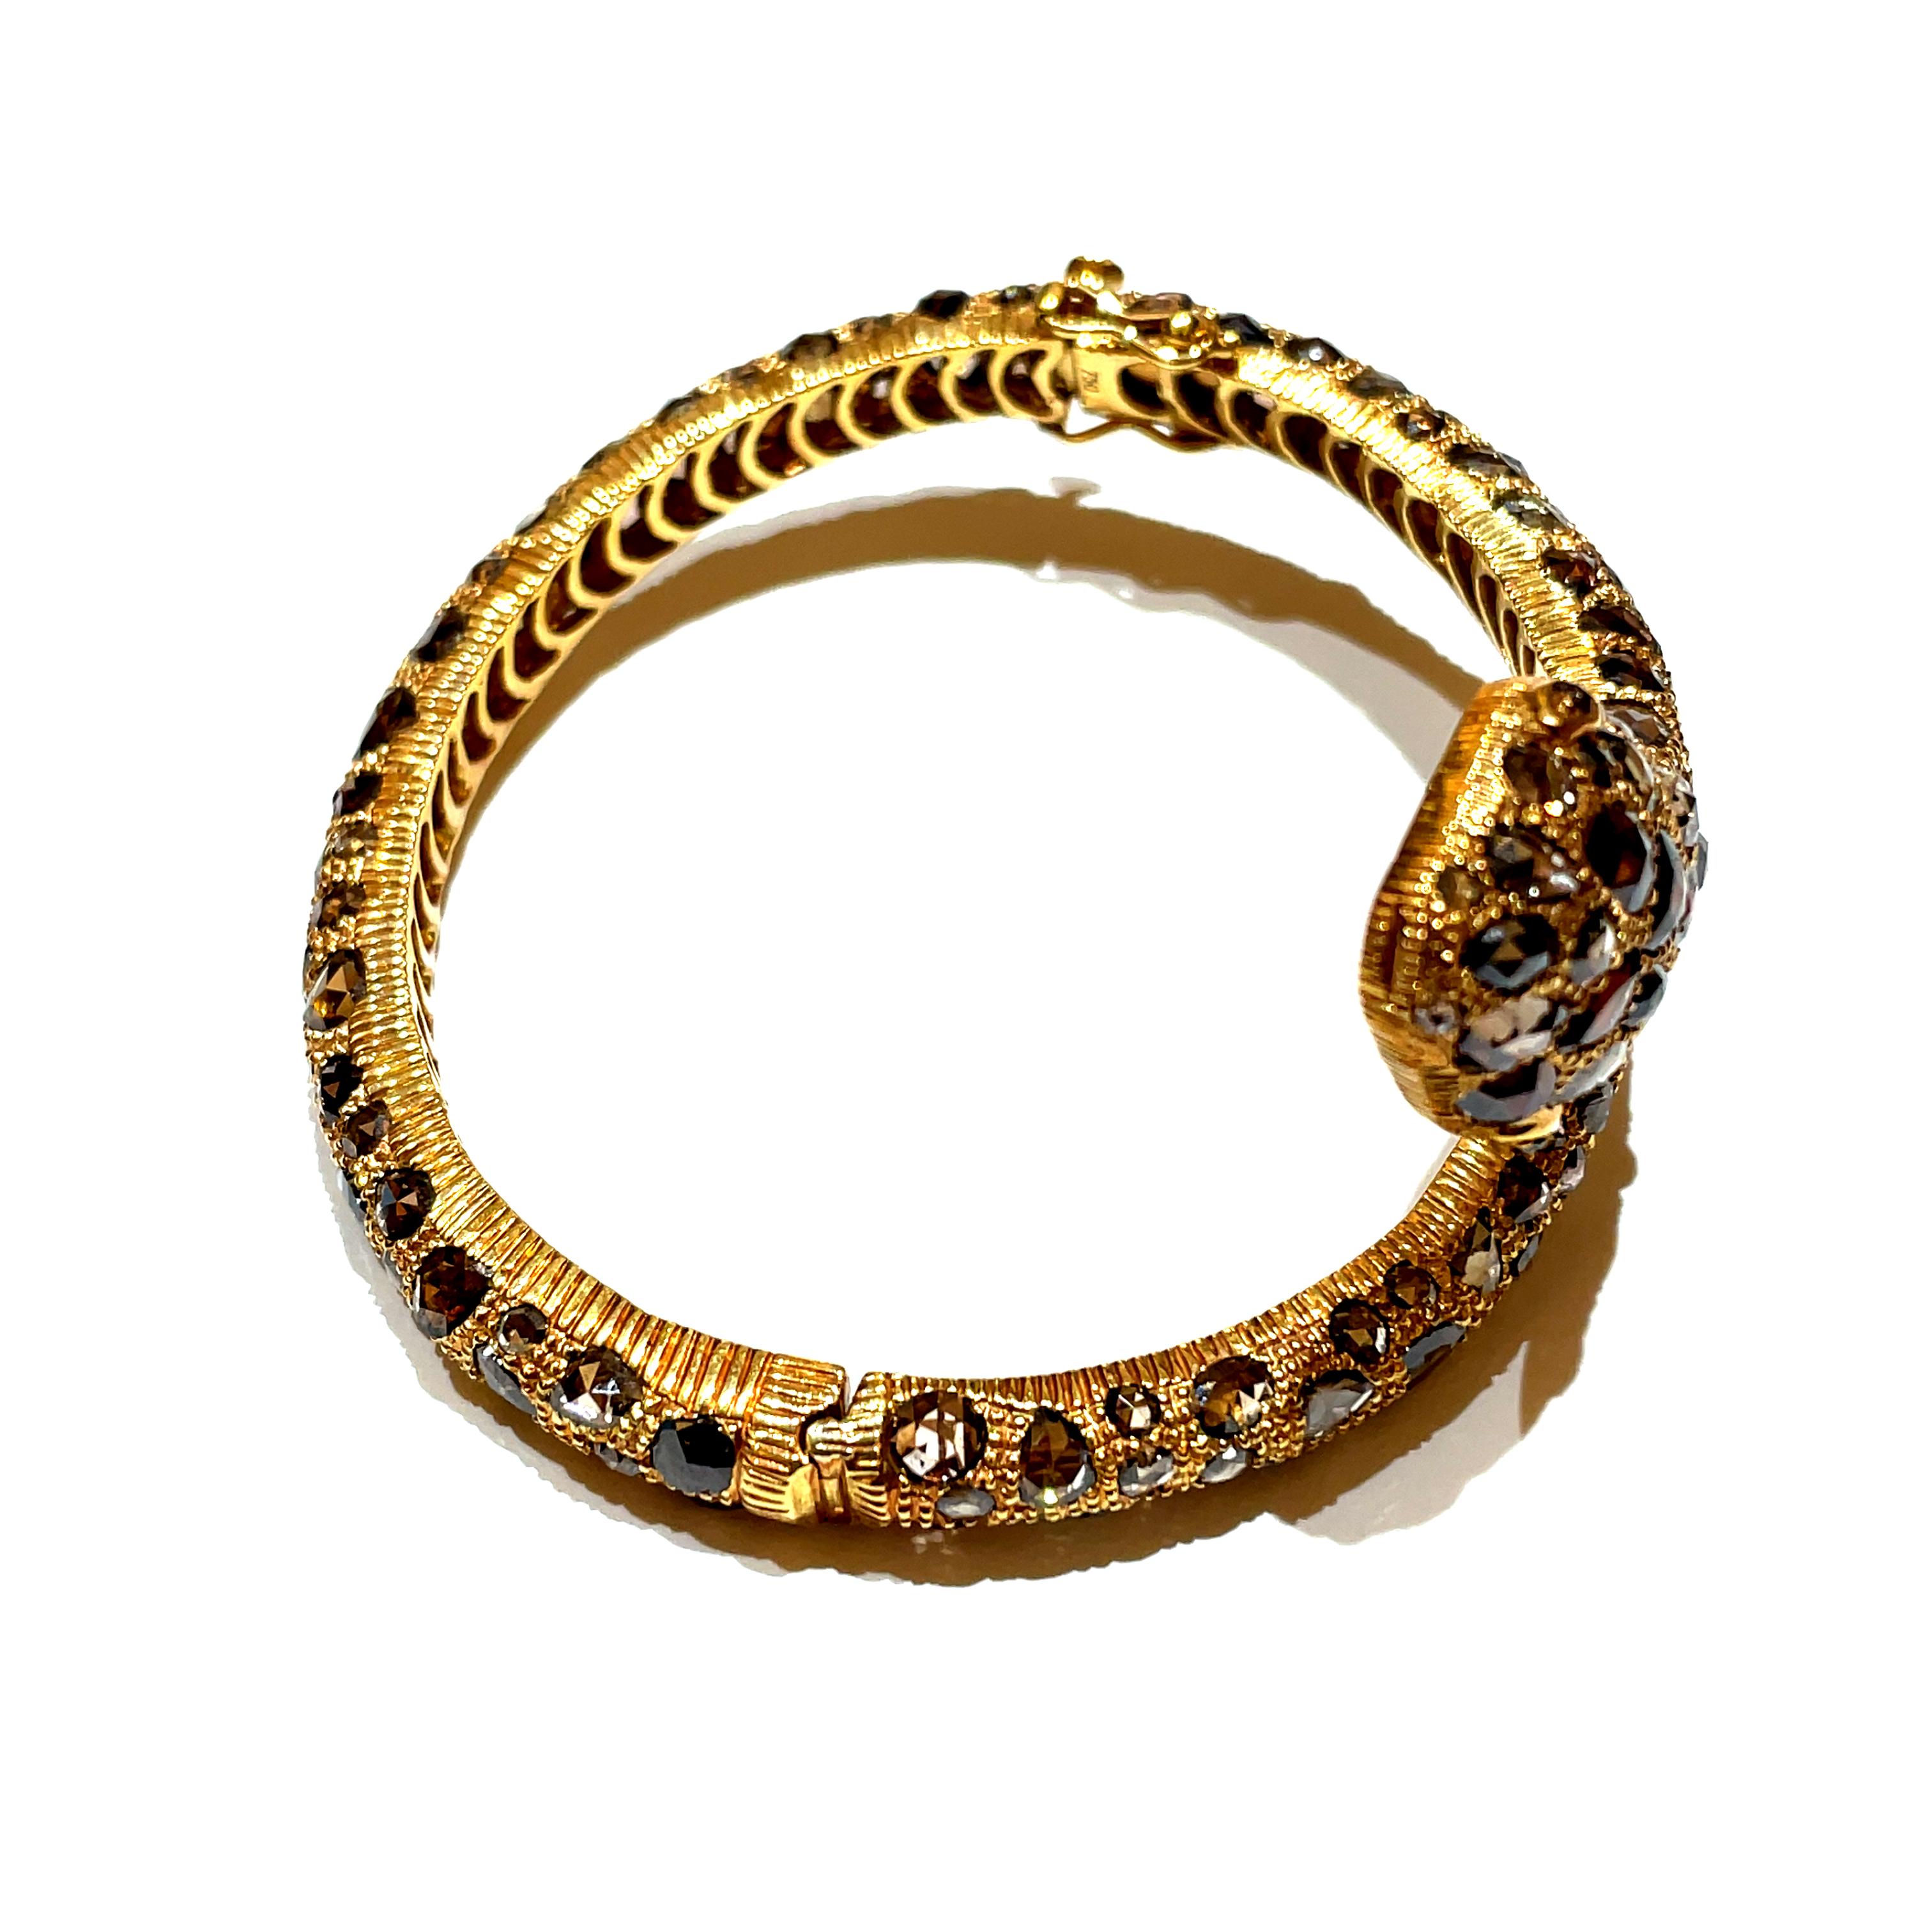 Enroulé autour de votre poignet, le bracelet Glam Snake en or jaune 18 carats déploie une histoire d'opulence et d'allure. 

Son design complexe, orné de 158 diamants bruns taillés en rose d'une valeur totale de 18,46 carats, évoque de manière